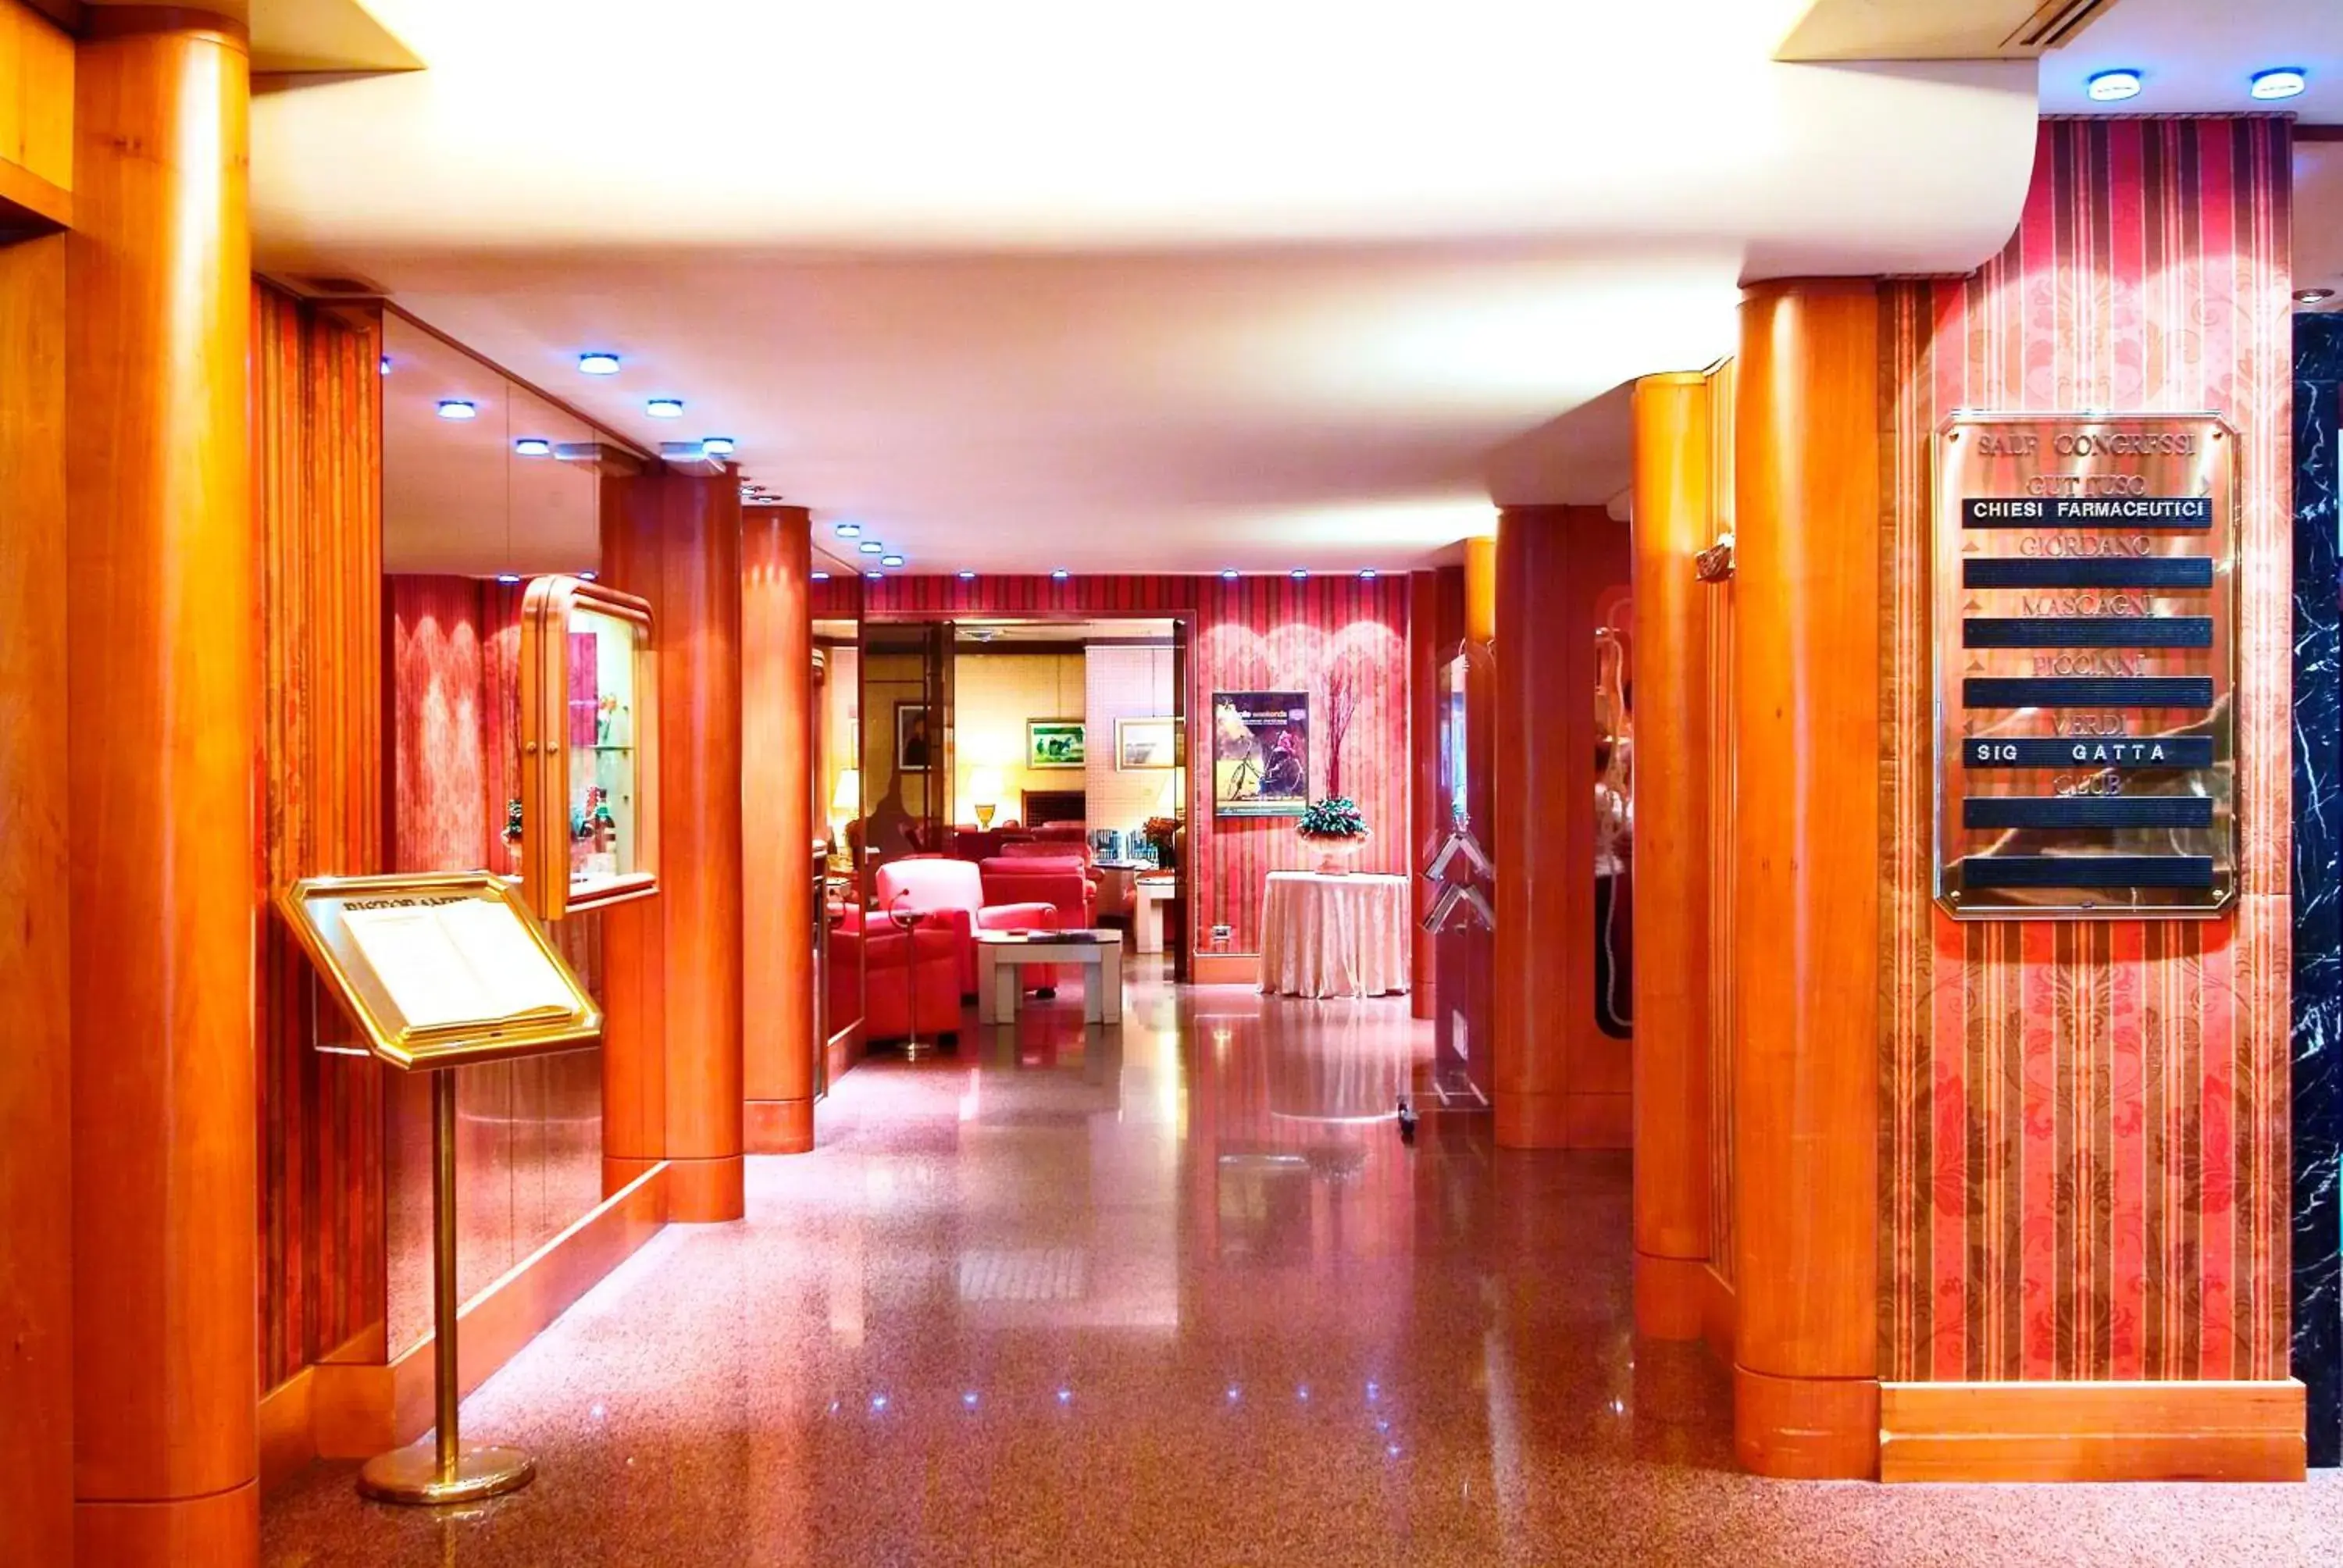 Lobby or reception in Hotel Cicolella